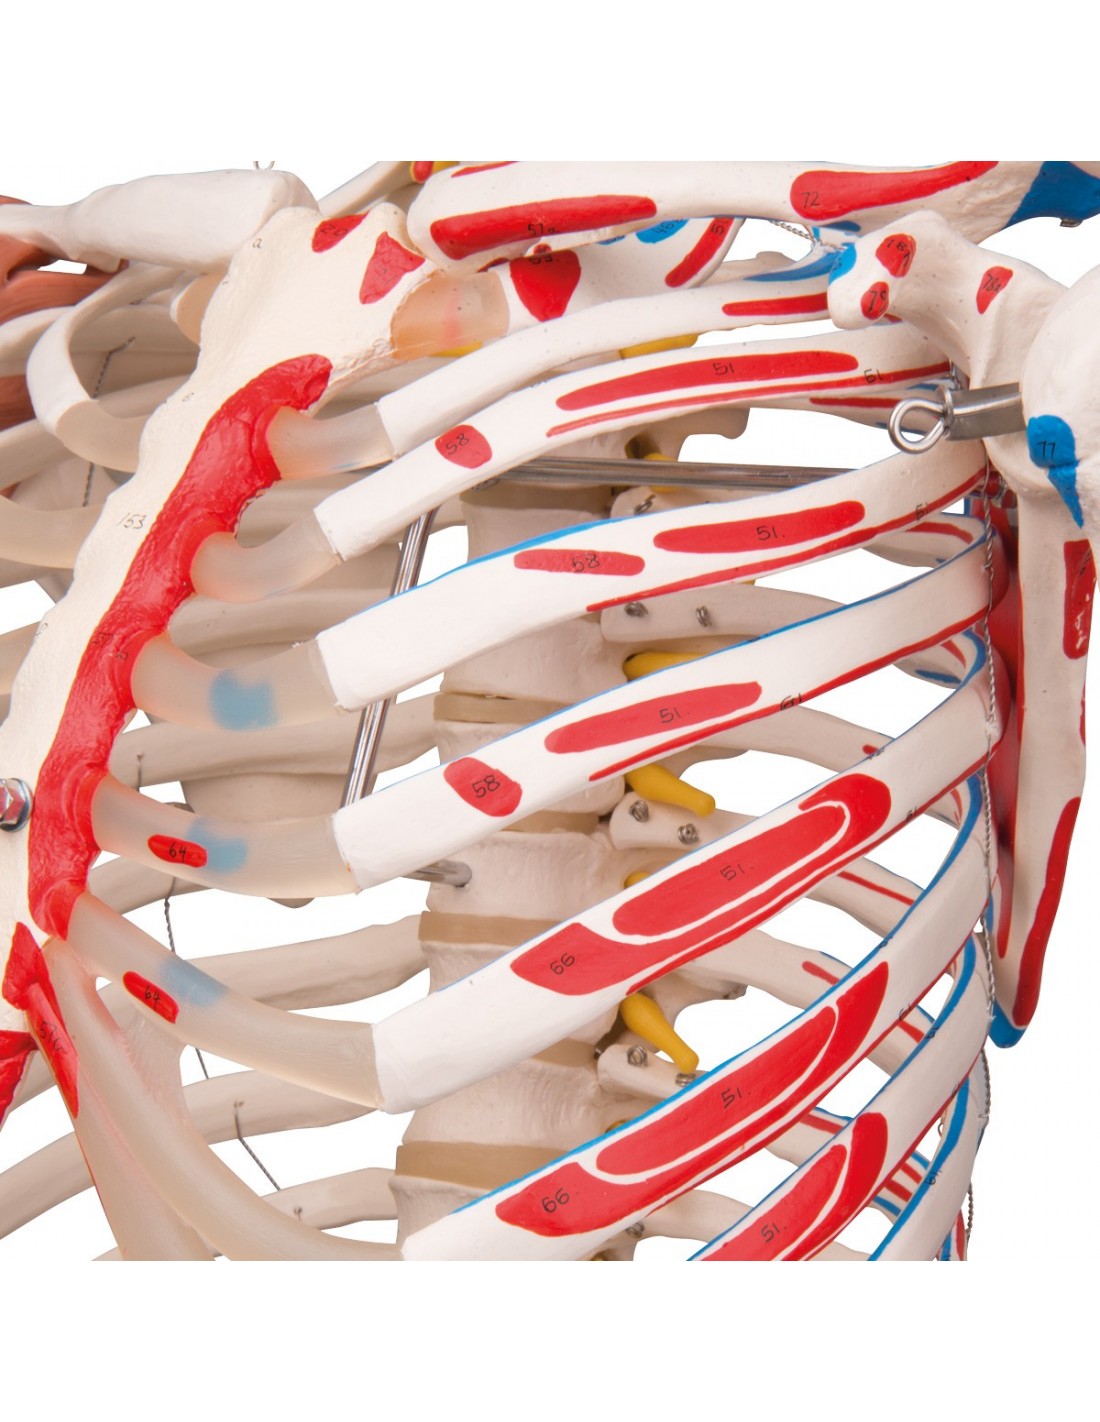 Modello di Scheletro Umano per Anatomia Scheletro Anatomico Scheletro Umano  Decorazione di Anatomia per Lo Studio del Sistema Scheletrico, Educativo :  : Commercio, Industria e Scienza